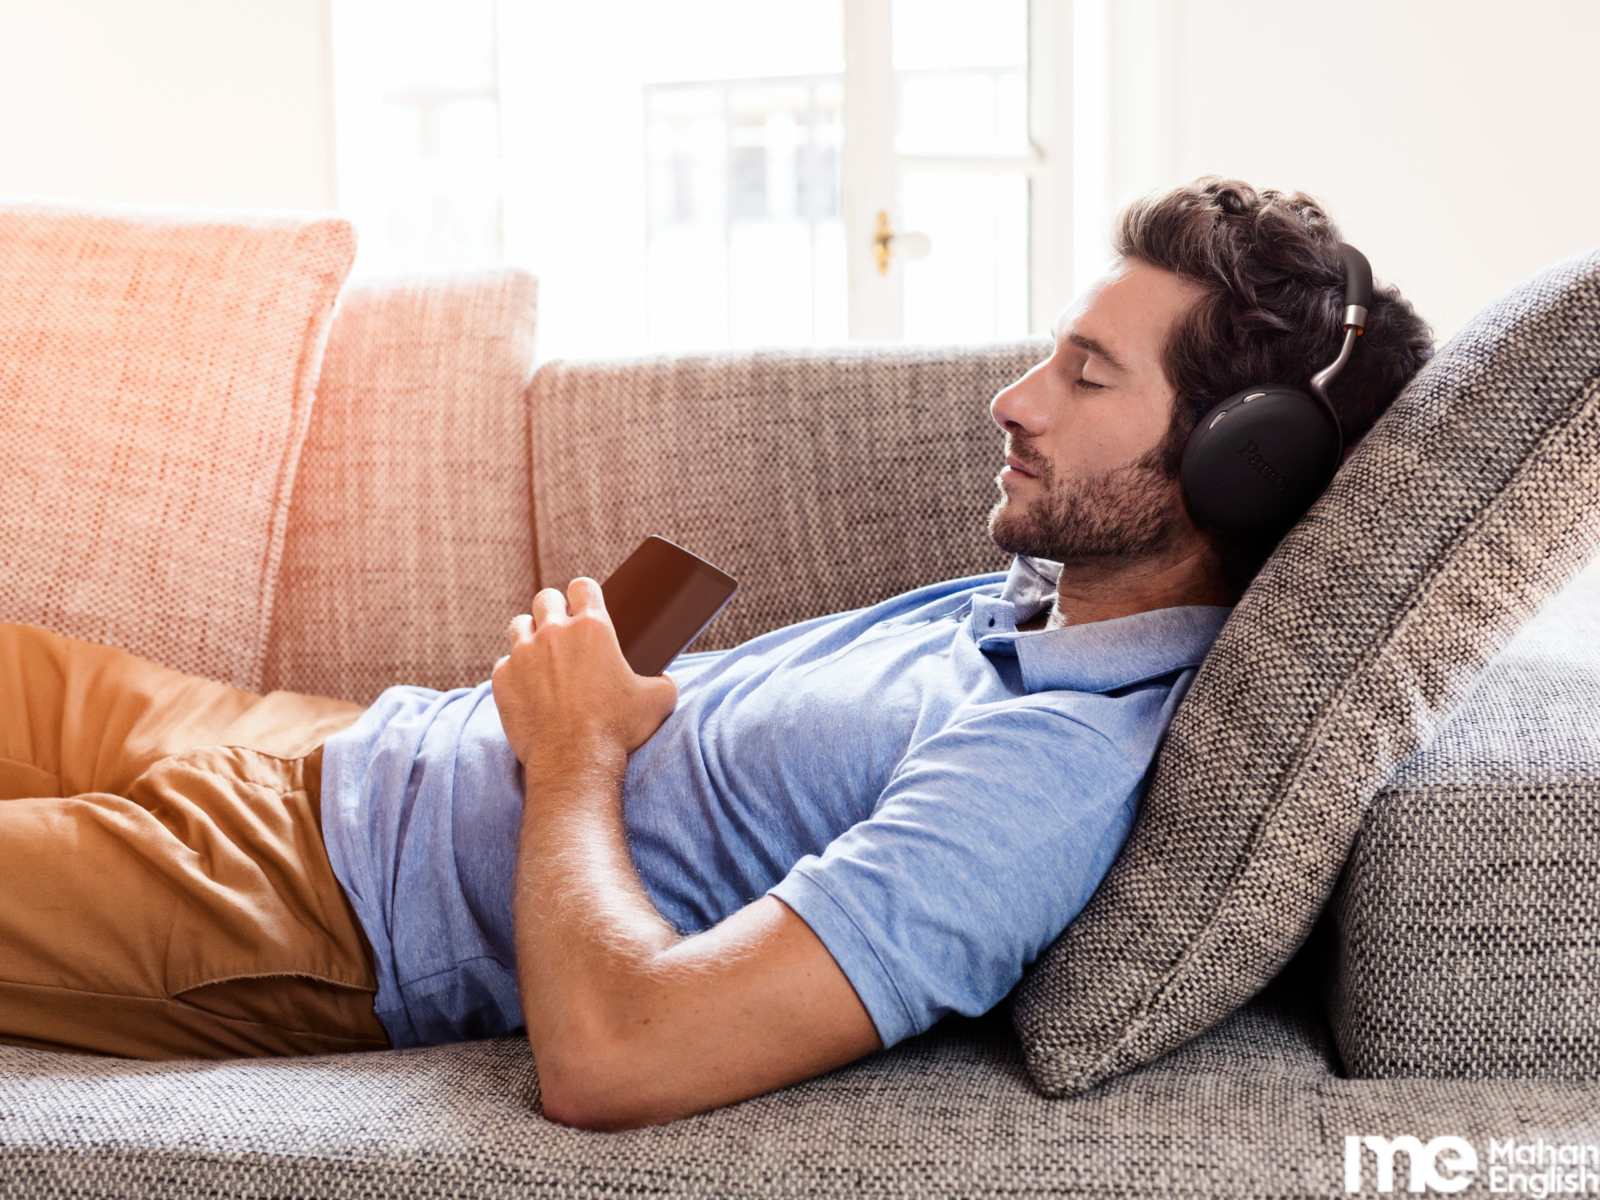 مردی در خواب روی کاناپه در حال گوش دادن به زبان انگلیسی